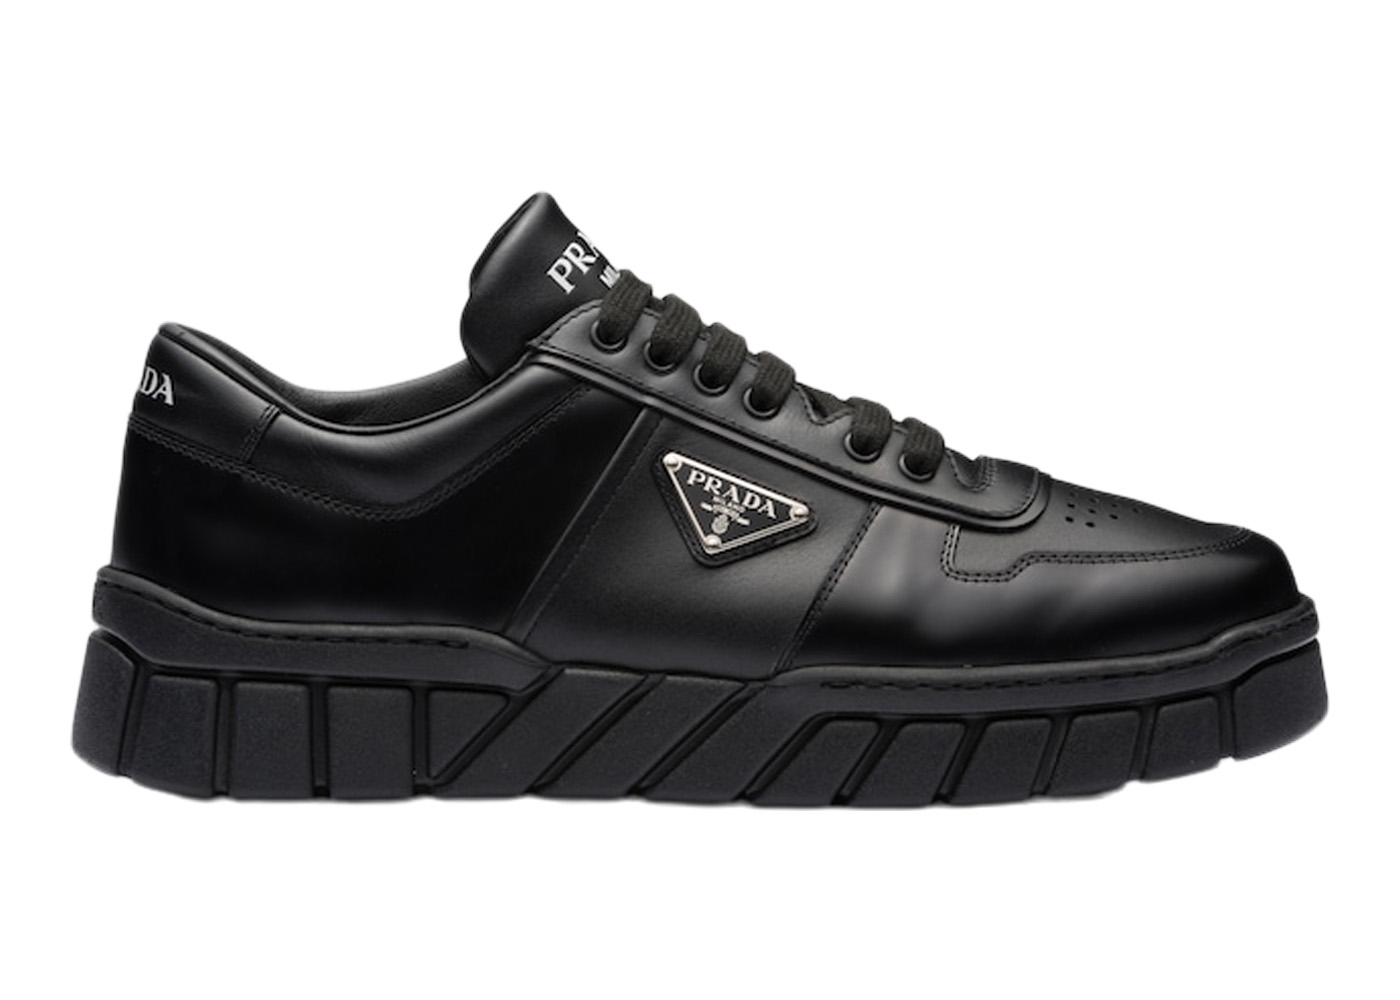 Prada Voluminous Sneakers Leather Black Black Men's